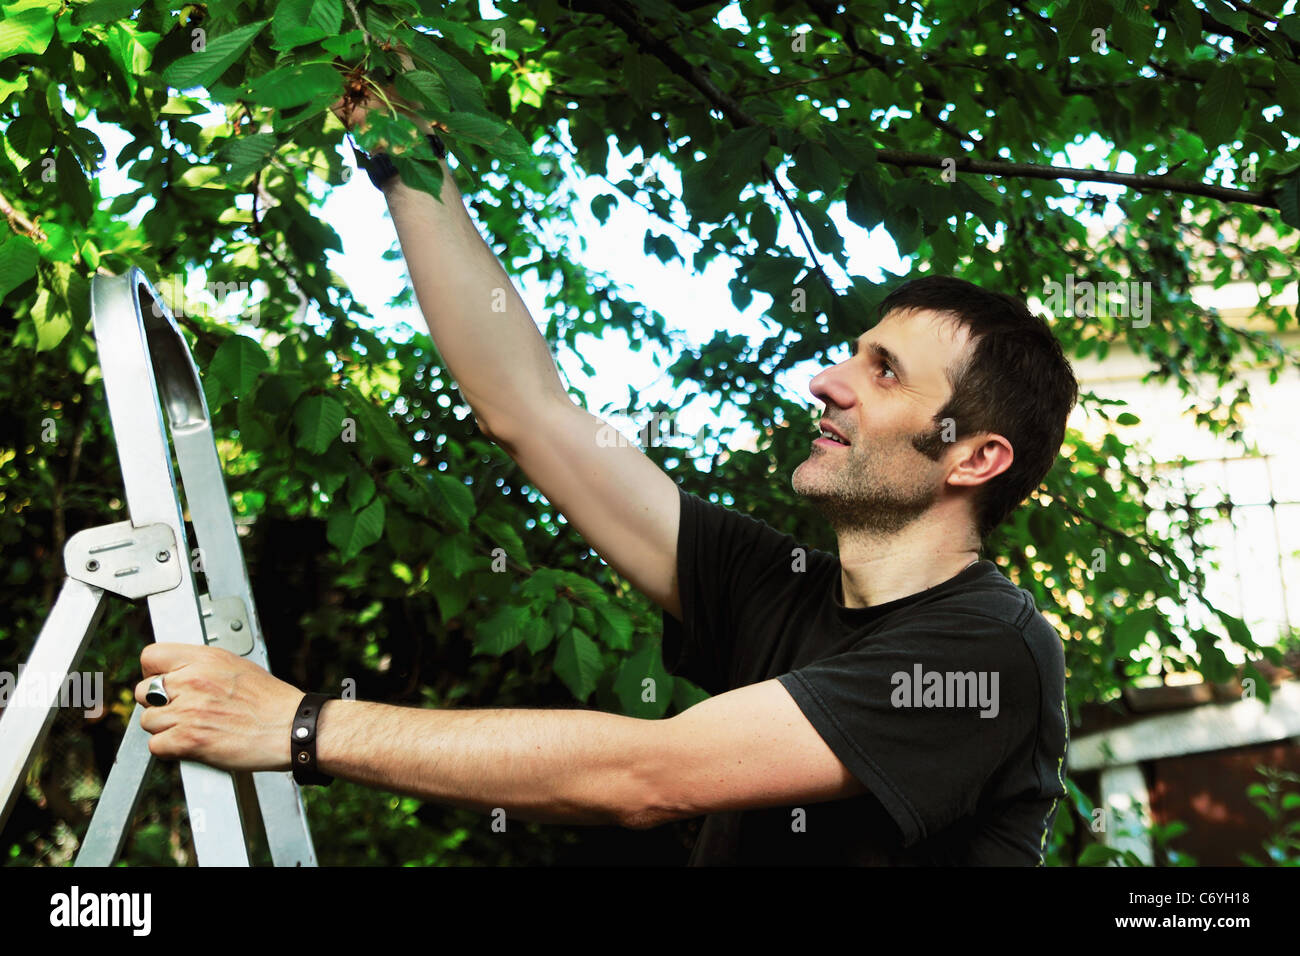 Man on ladder picking tree Stock Photo